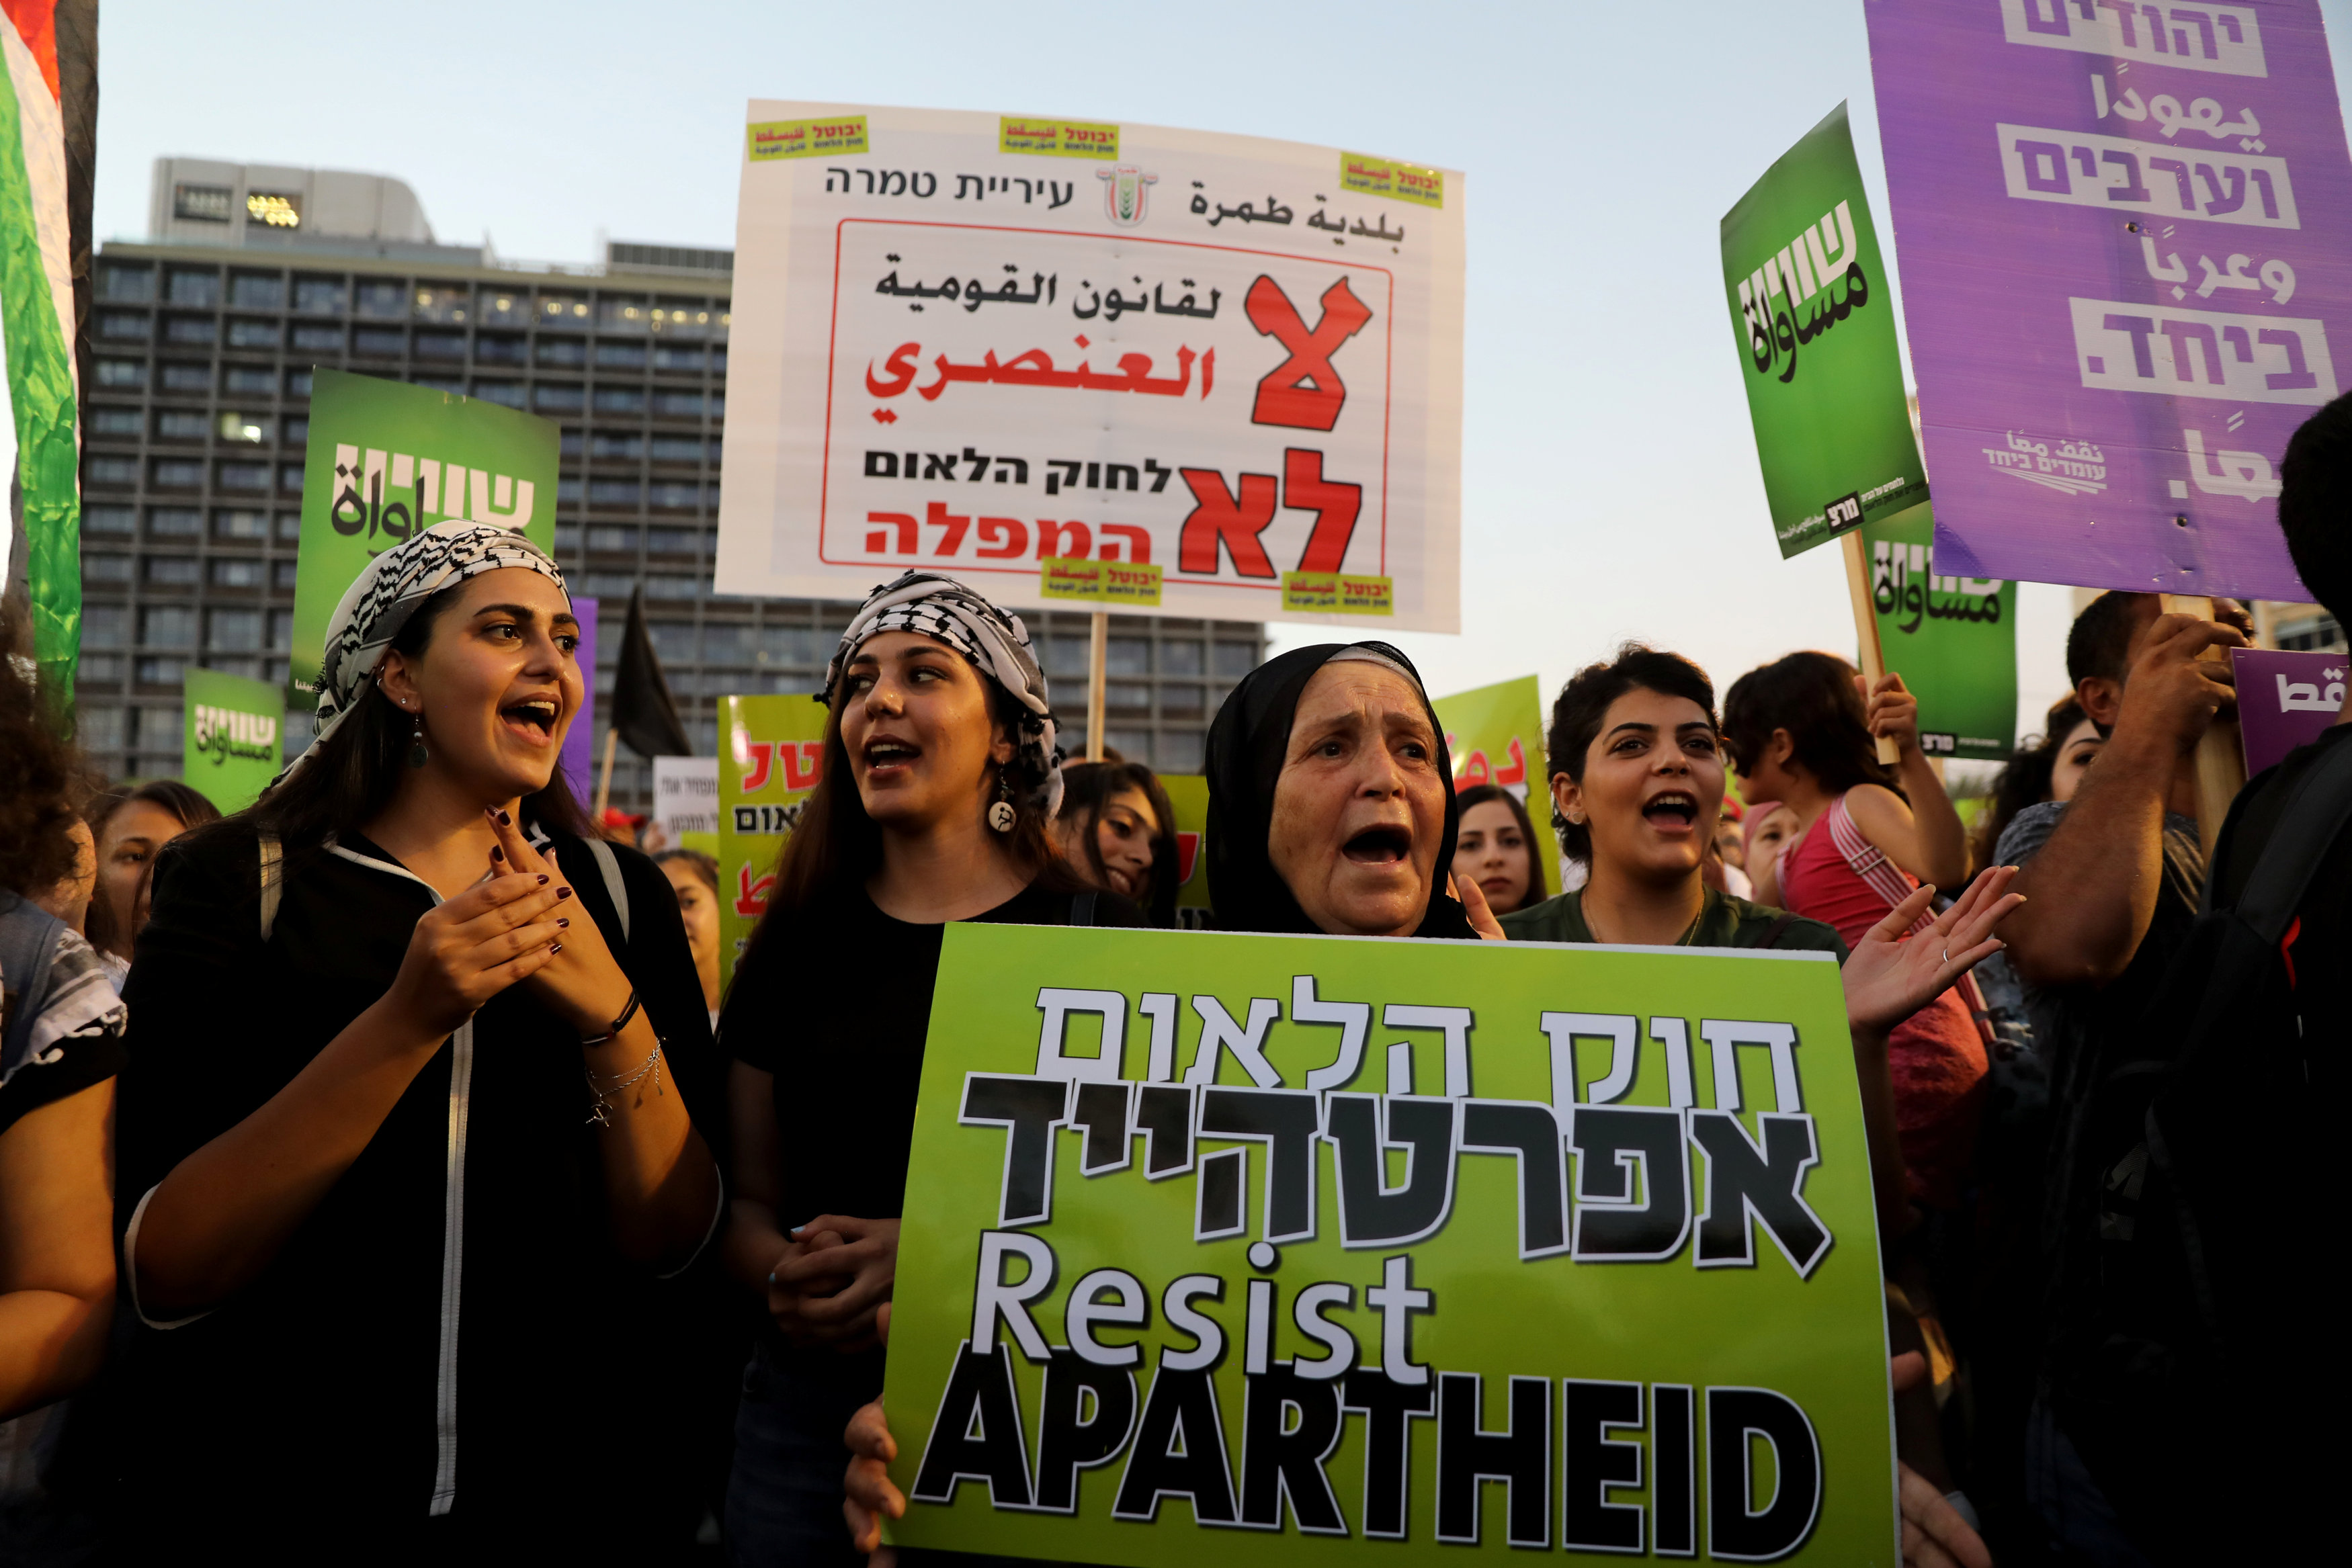  فلسطينيو 1948 ومؤازروهم يشاركون باحتجاجات على "قانون الدولة القومية" في تل أبيب، 11 أغسطس 2018. عمار عوض/ رويترز 